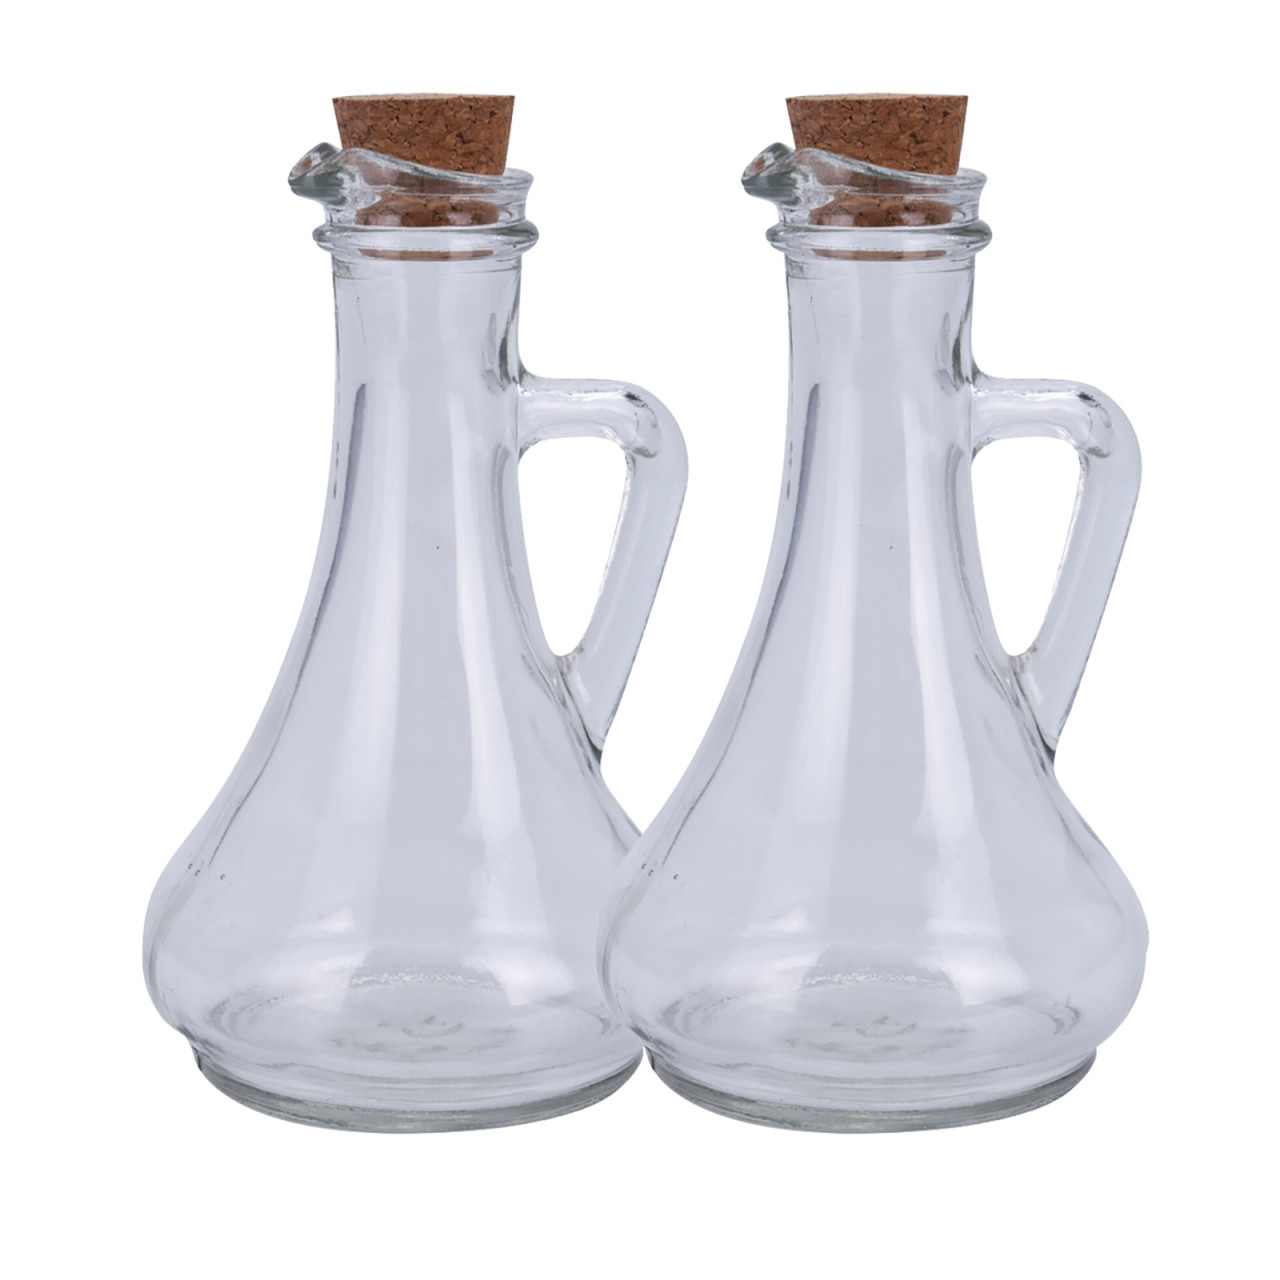 neuetischkultur 2 x Glasflaschen mit Korken für Essig oder Öl